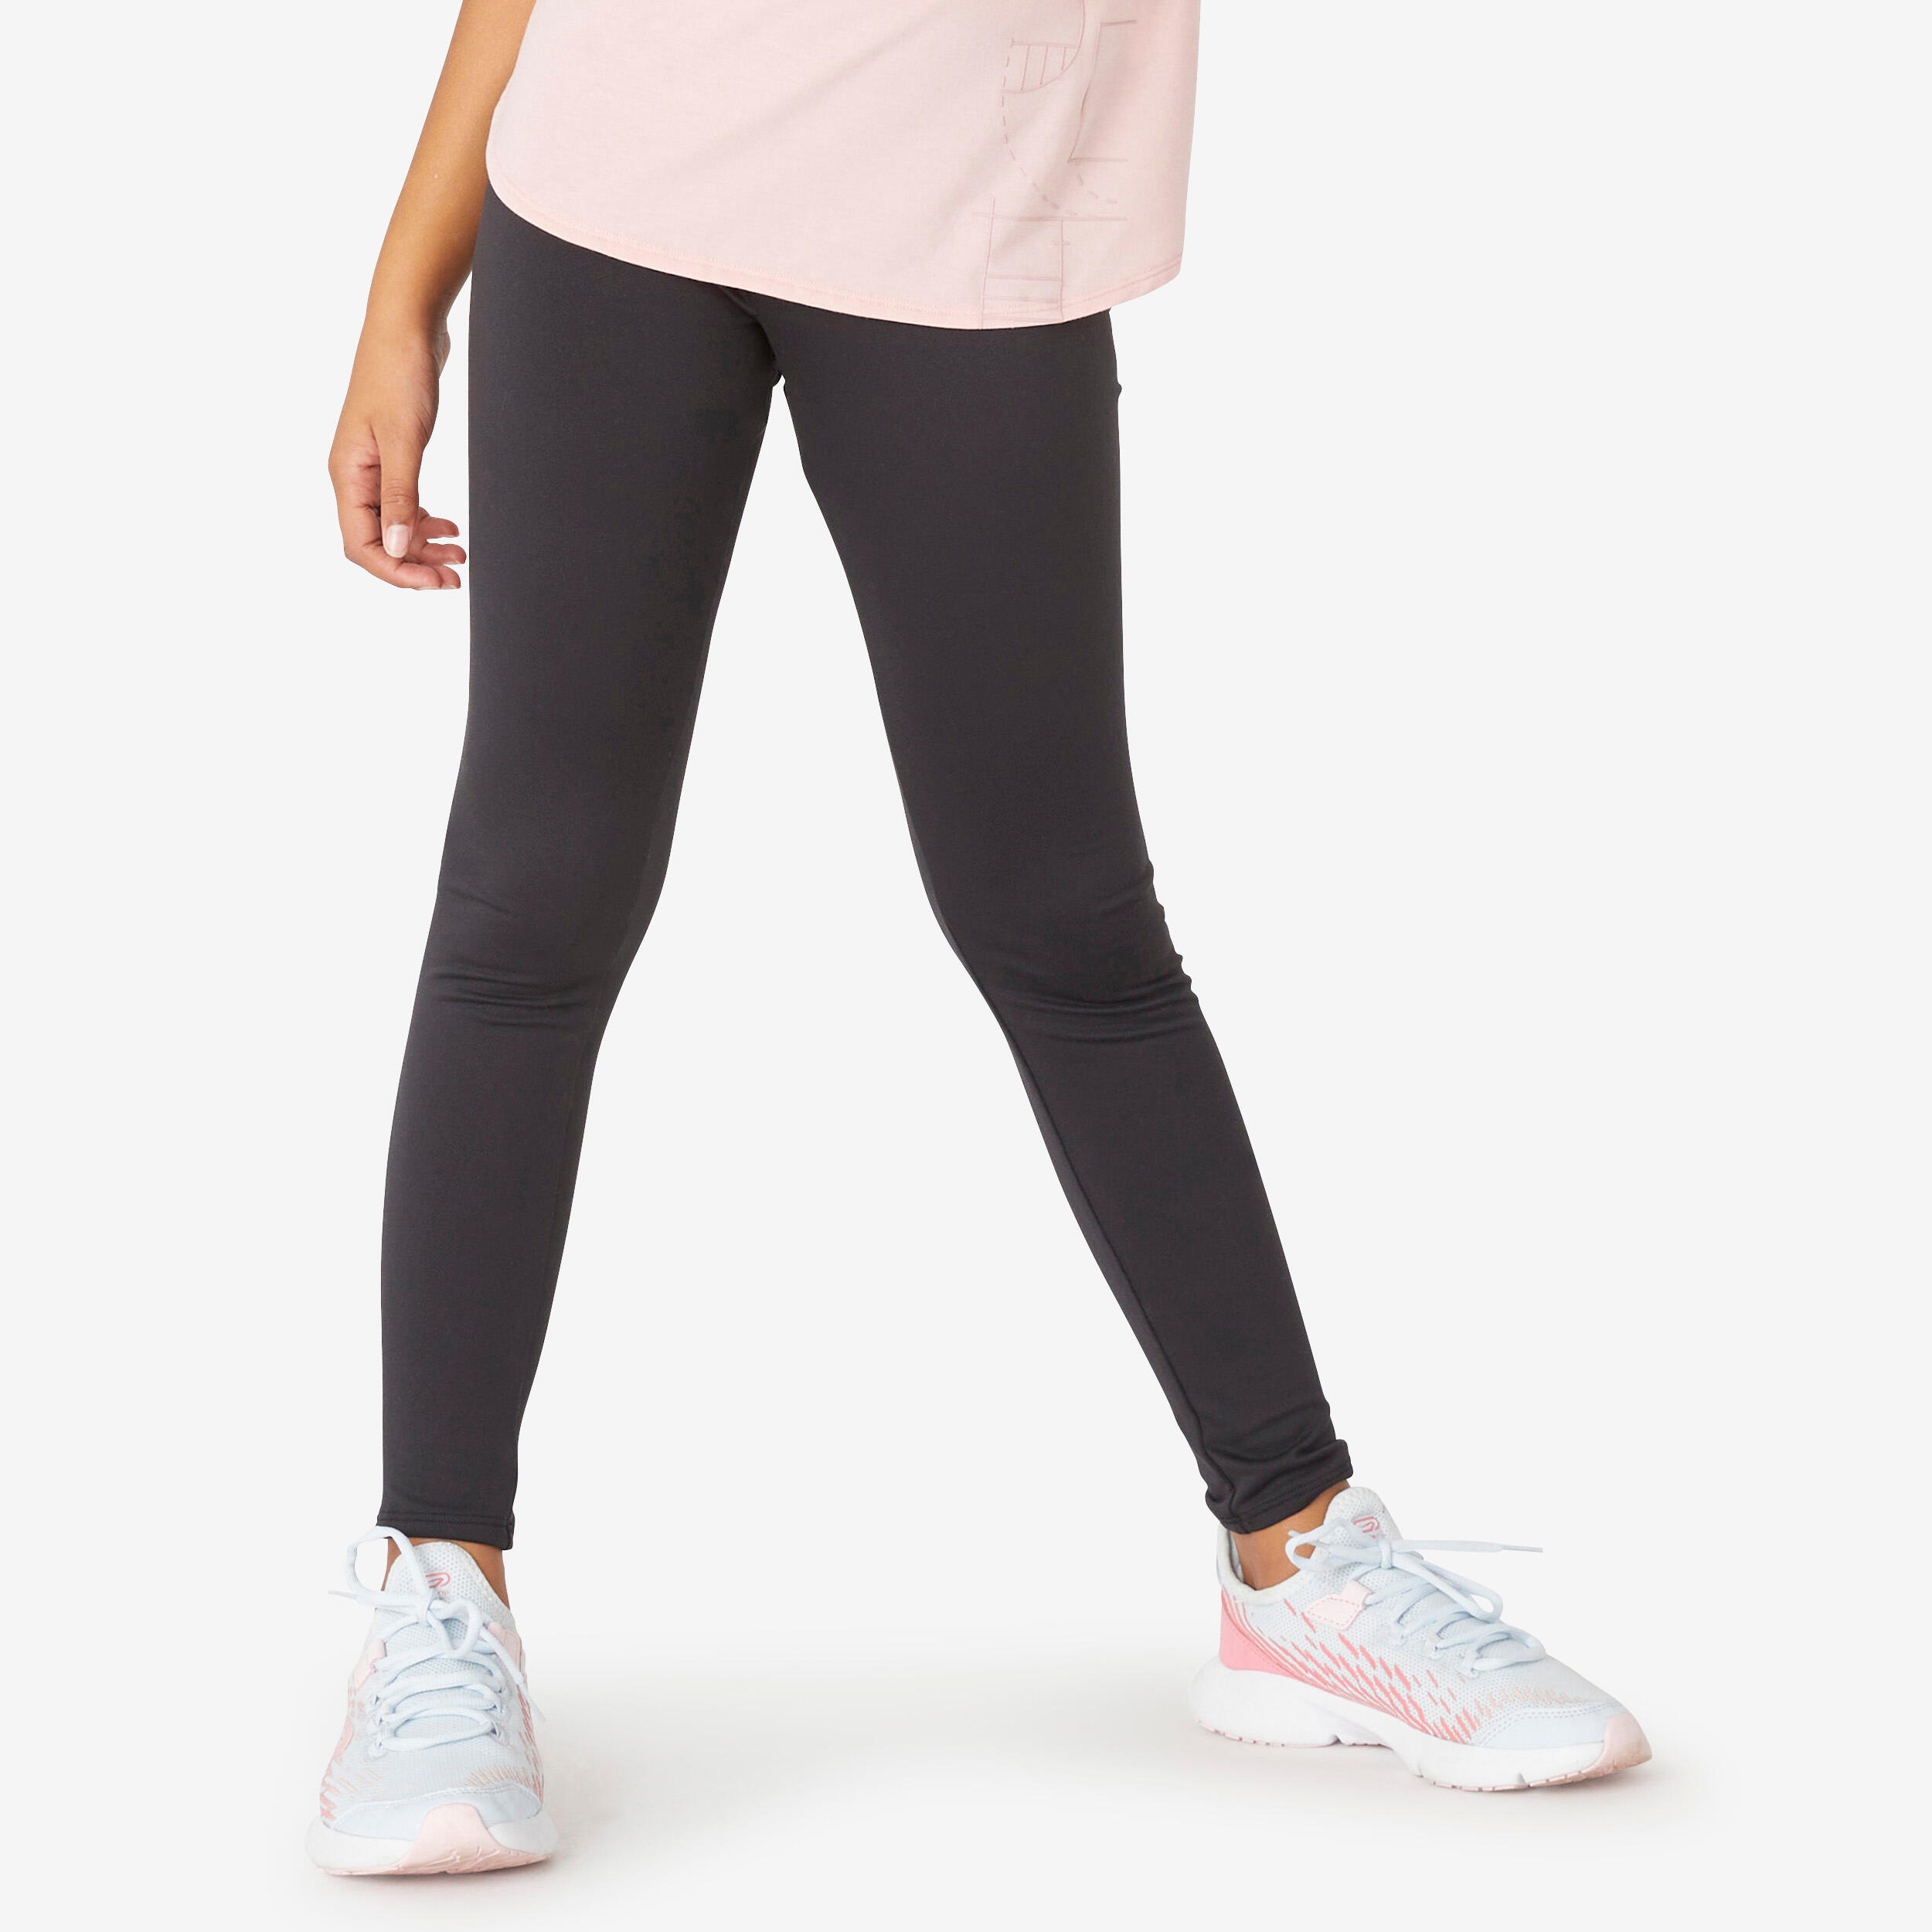 Decathlon Shape Booster Women's Fitness Cellulite Reduction Leggings Black  XS | eBay